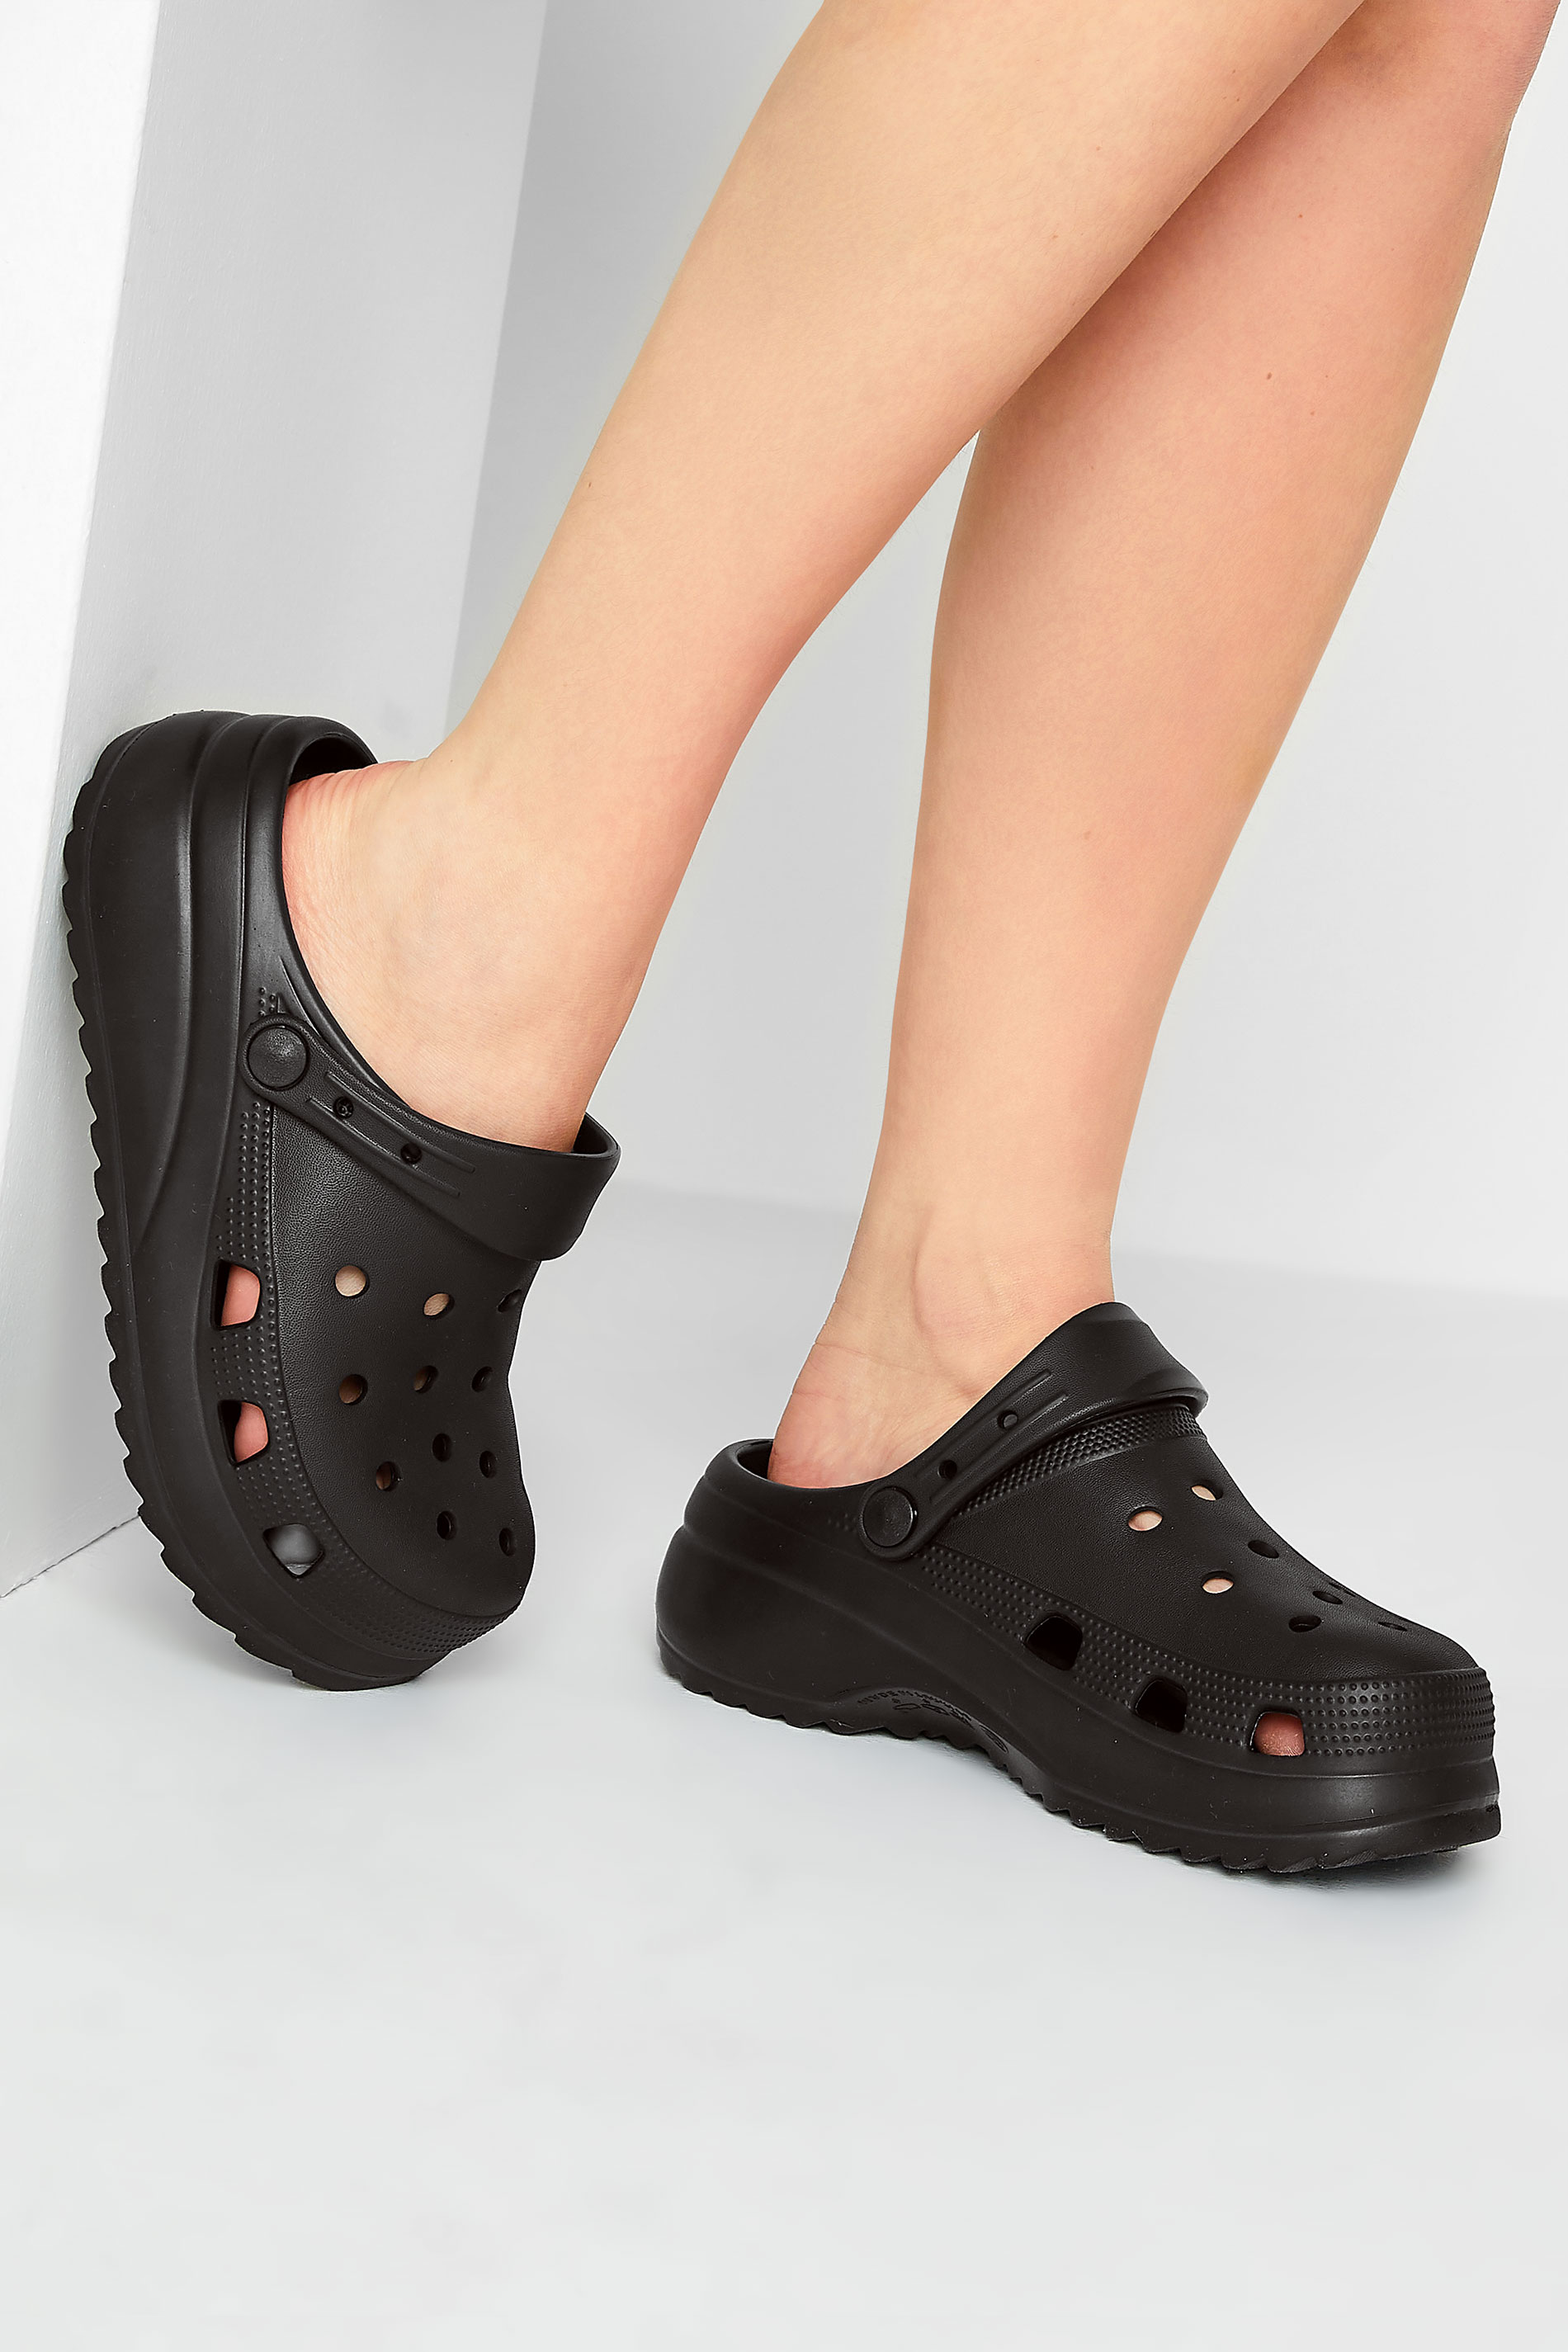 PixieGirl Black Platform Clog Sandal In Standard Fit | PixieGirl 1